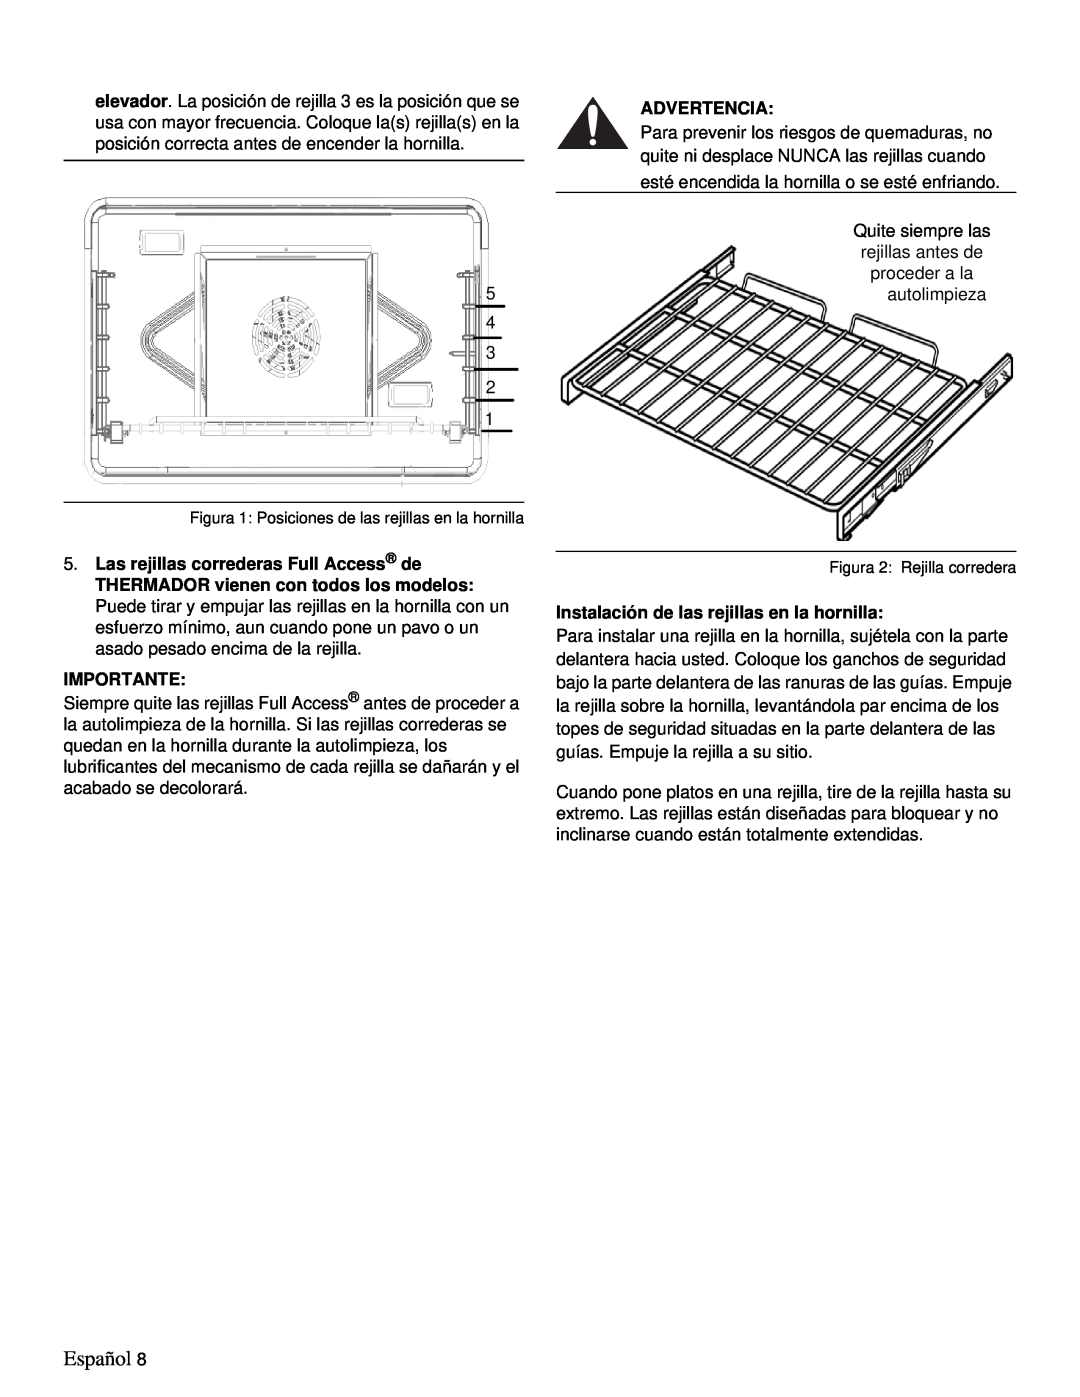 Thermador PRD48, PRD36 manual Español, Advertencia, Importante, Instalación de las rejillas en la hornilla 